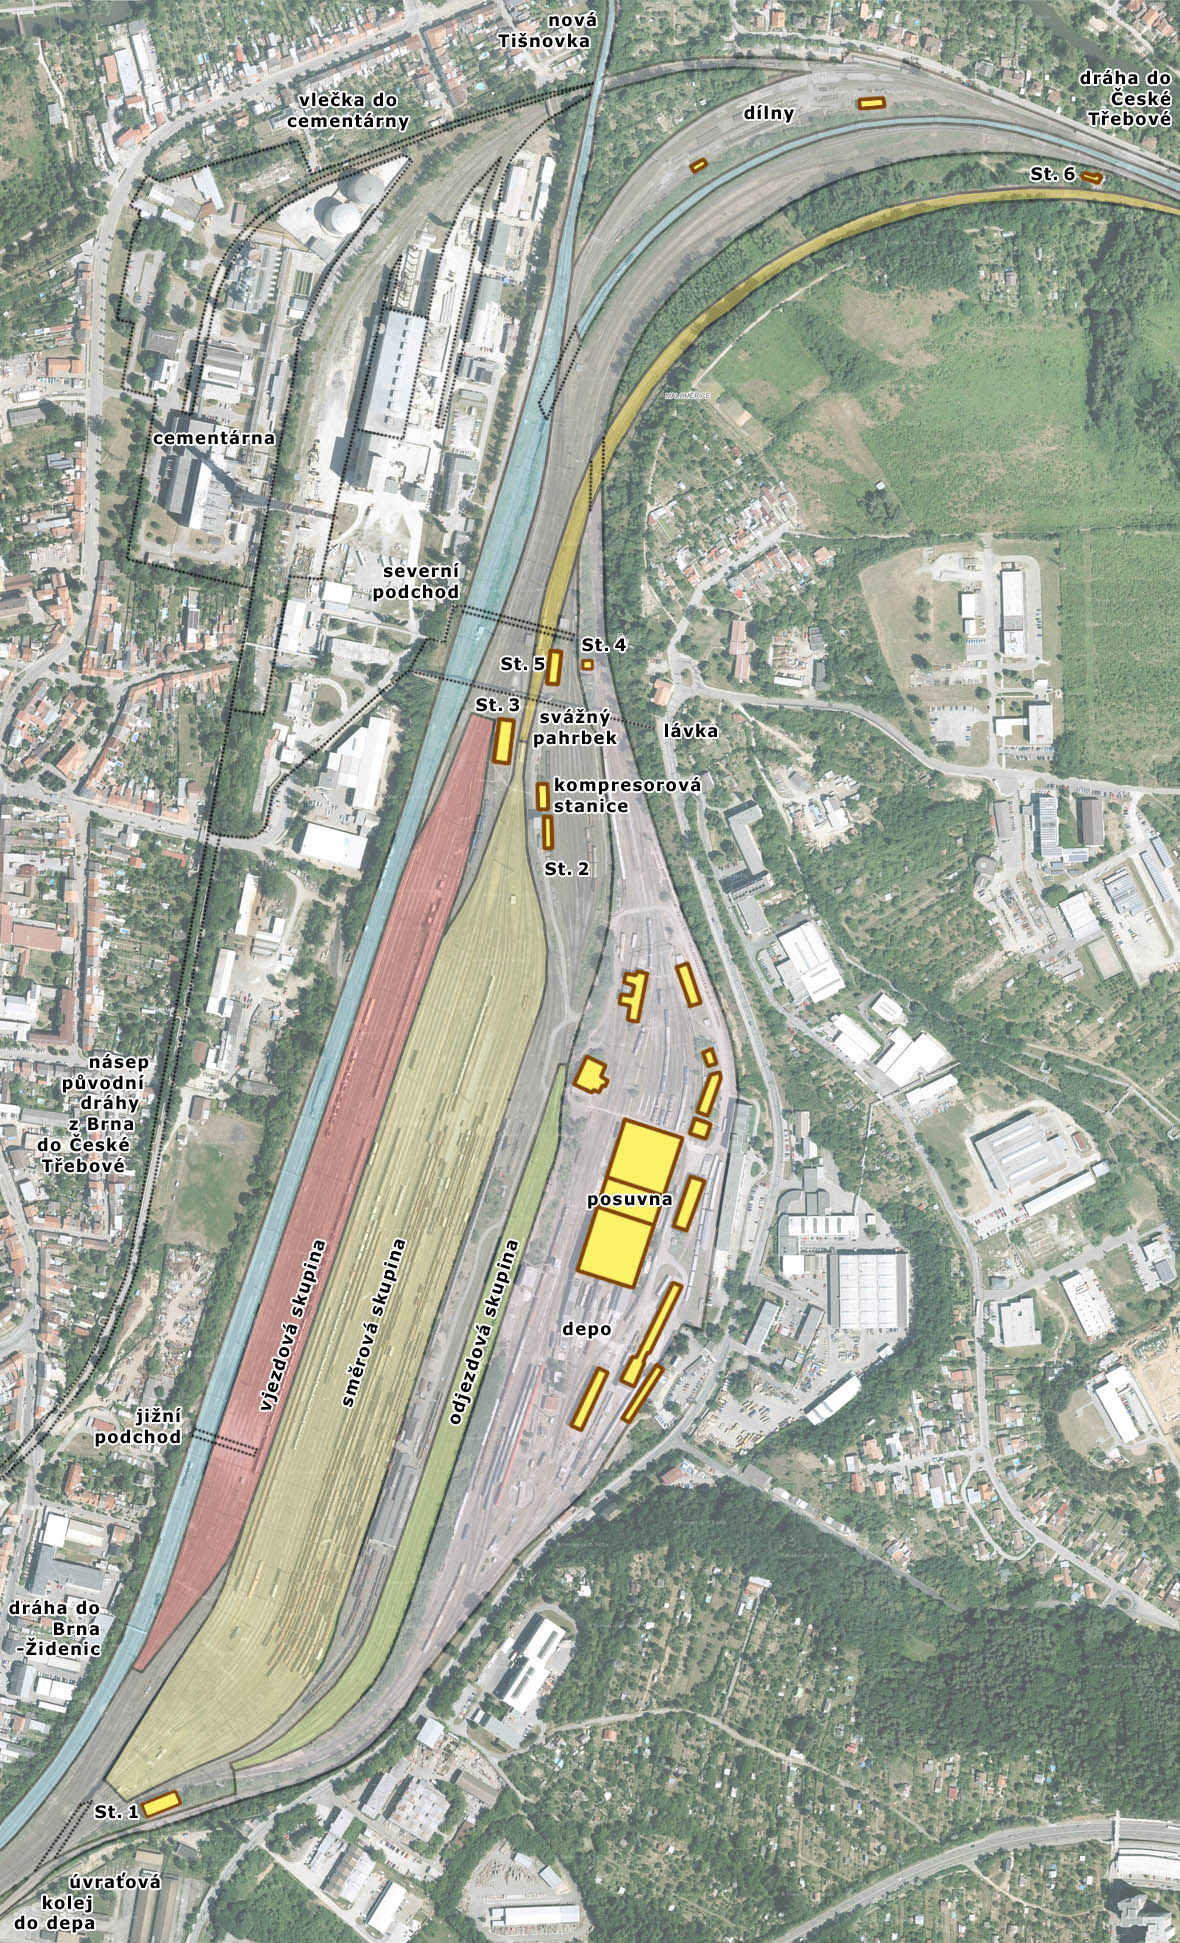 Stanice Brno-Maloměřice se zakreslením průchozích kolejí železničních tratí (modrá), vjezdové skupiny (červená), směrové skupiny (žlutá) a odjezdové skupiny (zelená) seřadiště, výtažných kolejí svážného pahrbku (oranžová), oblasti depa (fialová) a ostatních kolejí (šedá). V plánku je zakresleno 6 stavědel stanice a další význačné budovy.